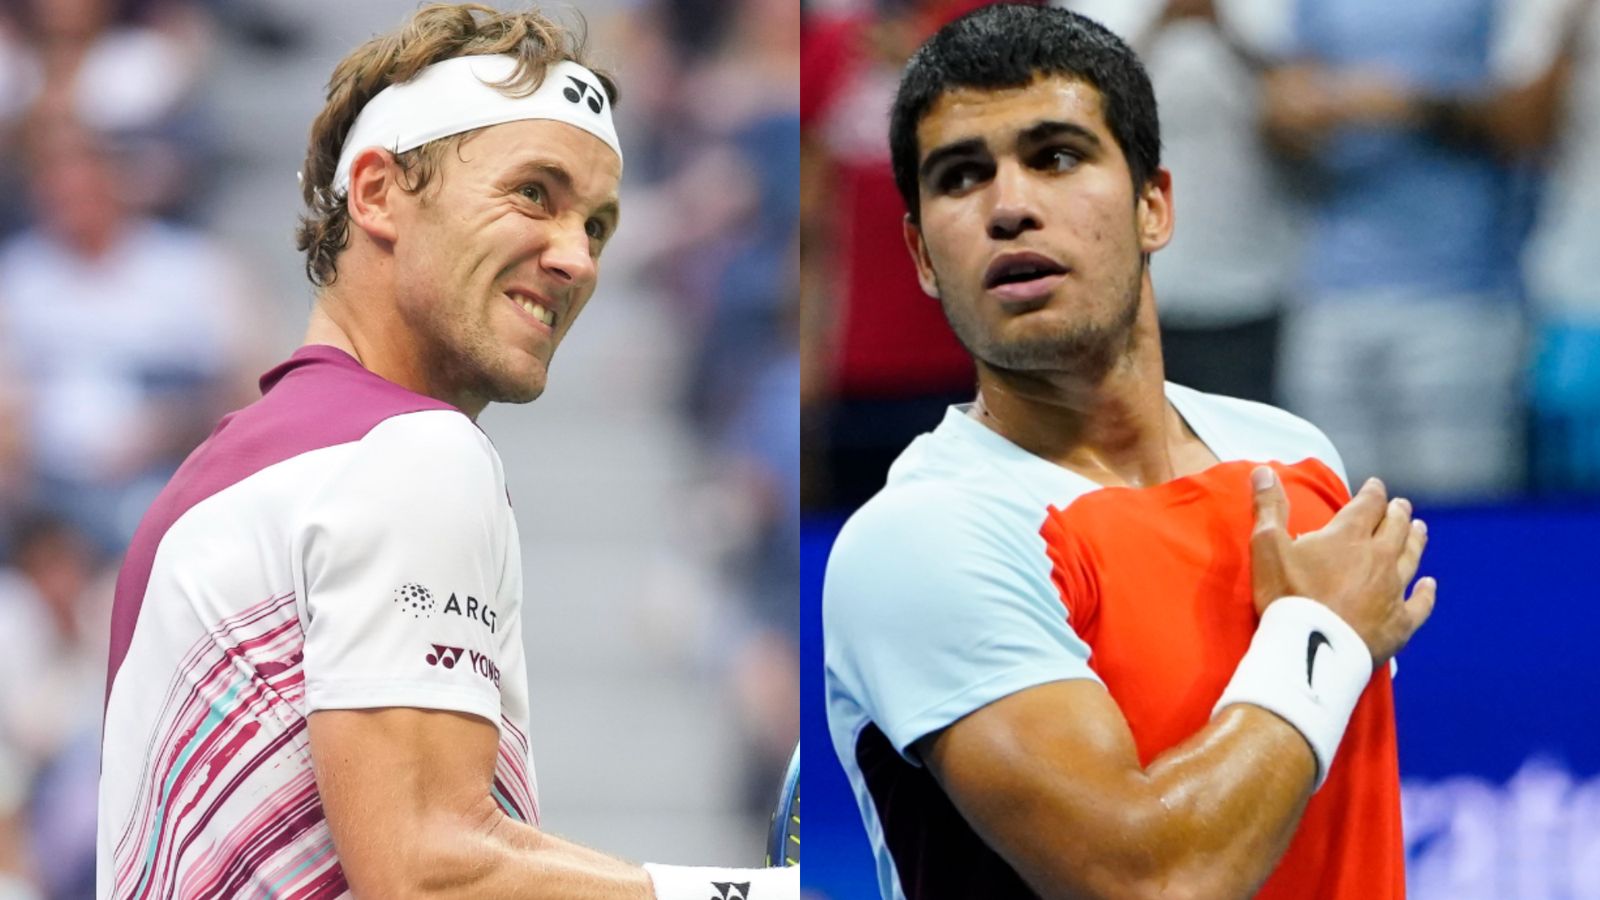 US Open: Casper Ruud og Carlos Alcaraz møtes i søndagens finale med verdens nr. 1 på rekken |  Tennis nyheter